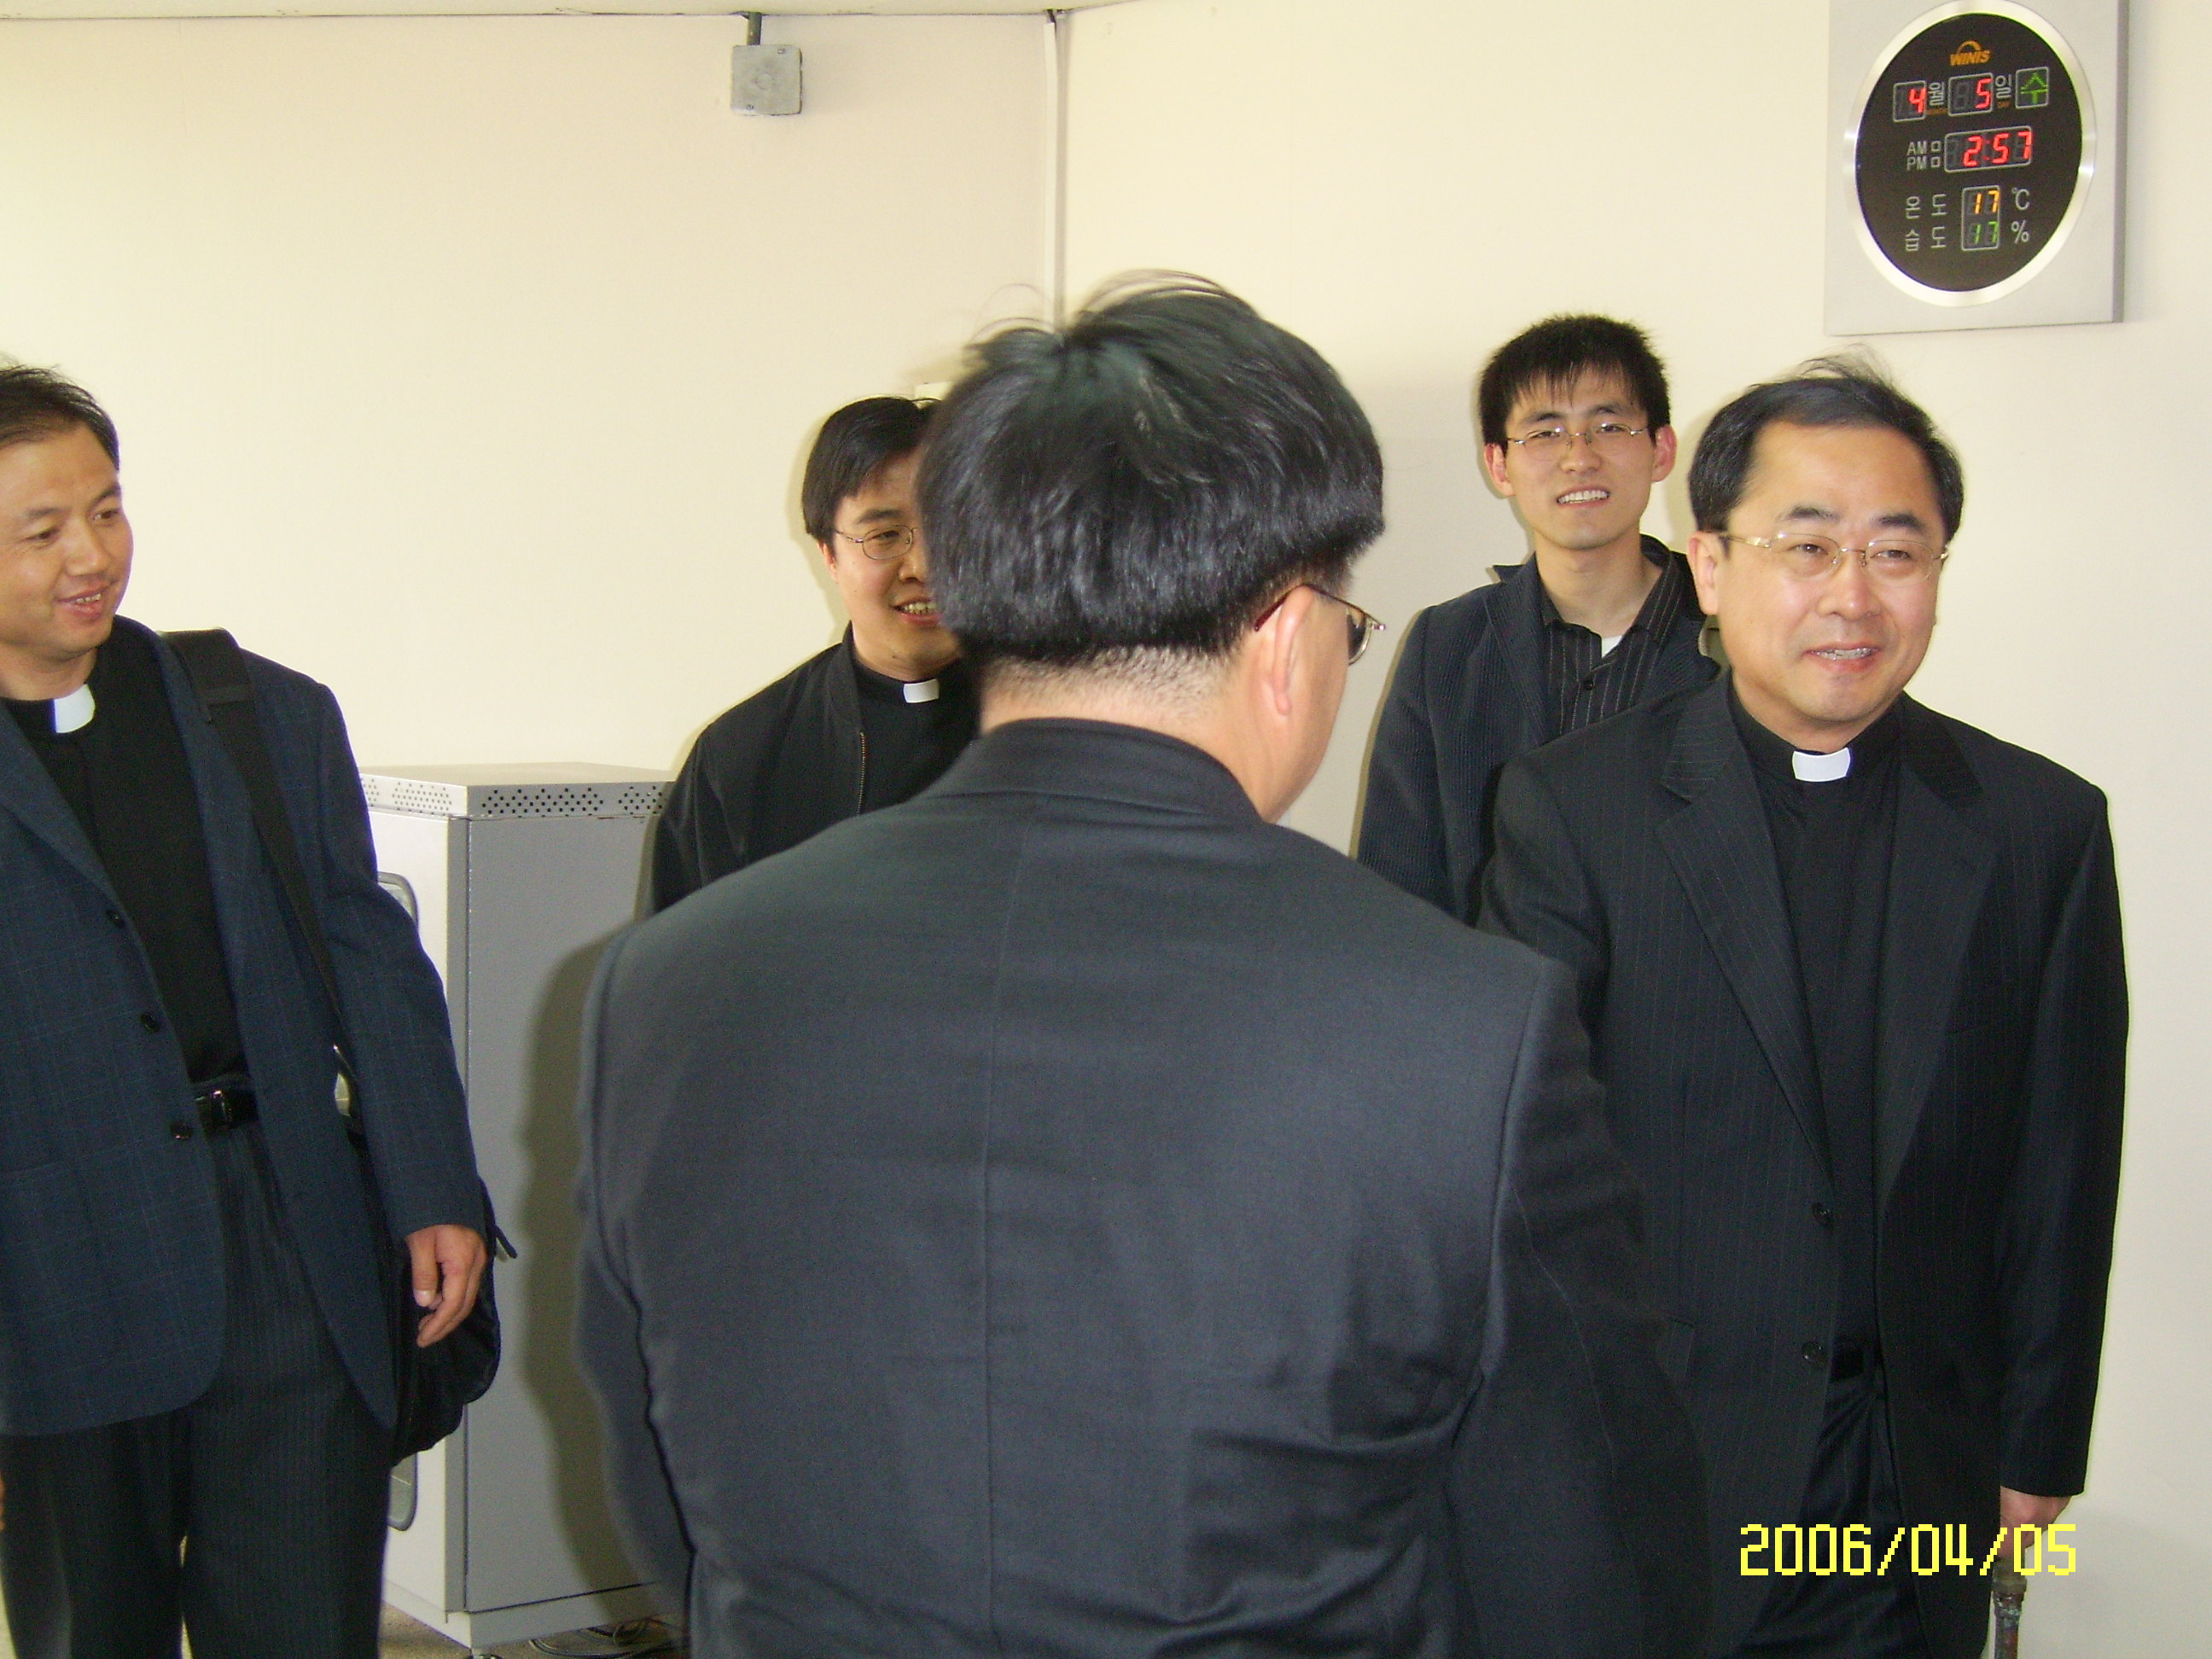 중국 태원교구 산서성 신학교 부원장 신부와 신학생 3명 방문(2006.4.5)의 관련된 이미지 입니다.